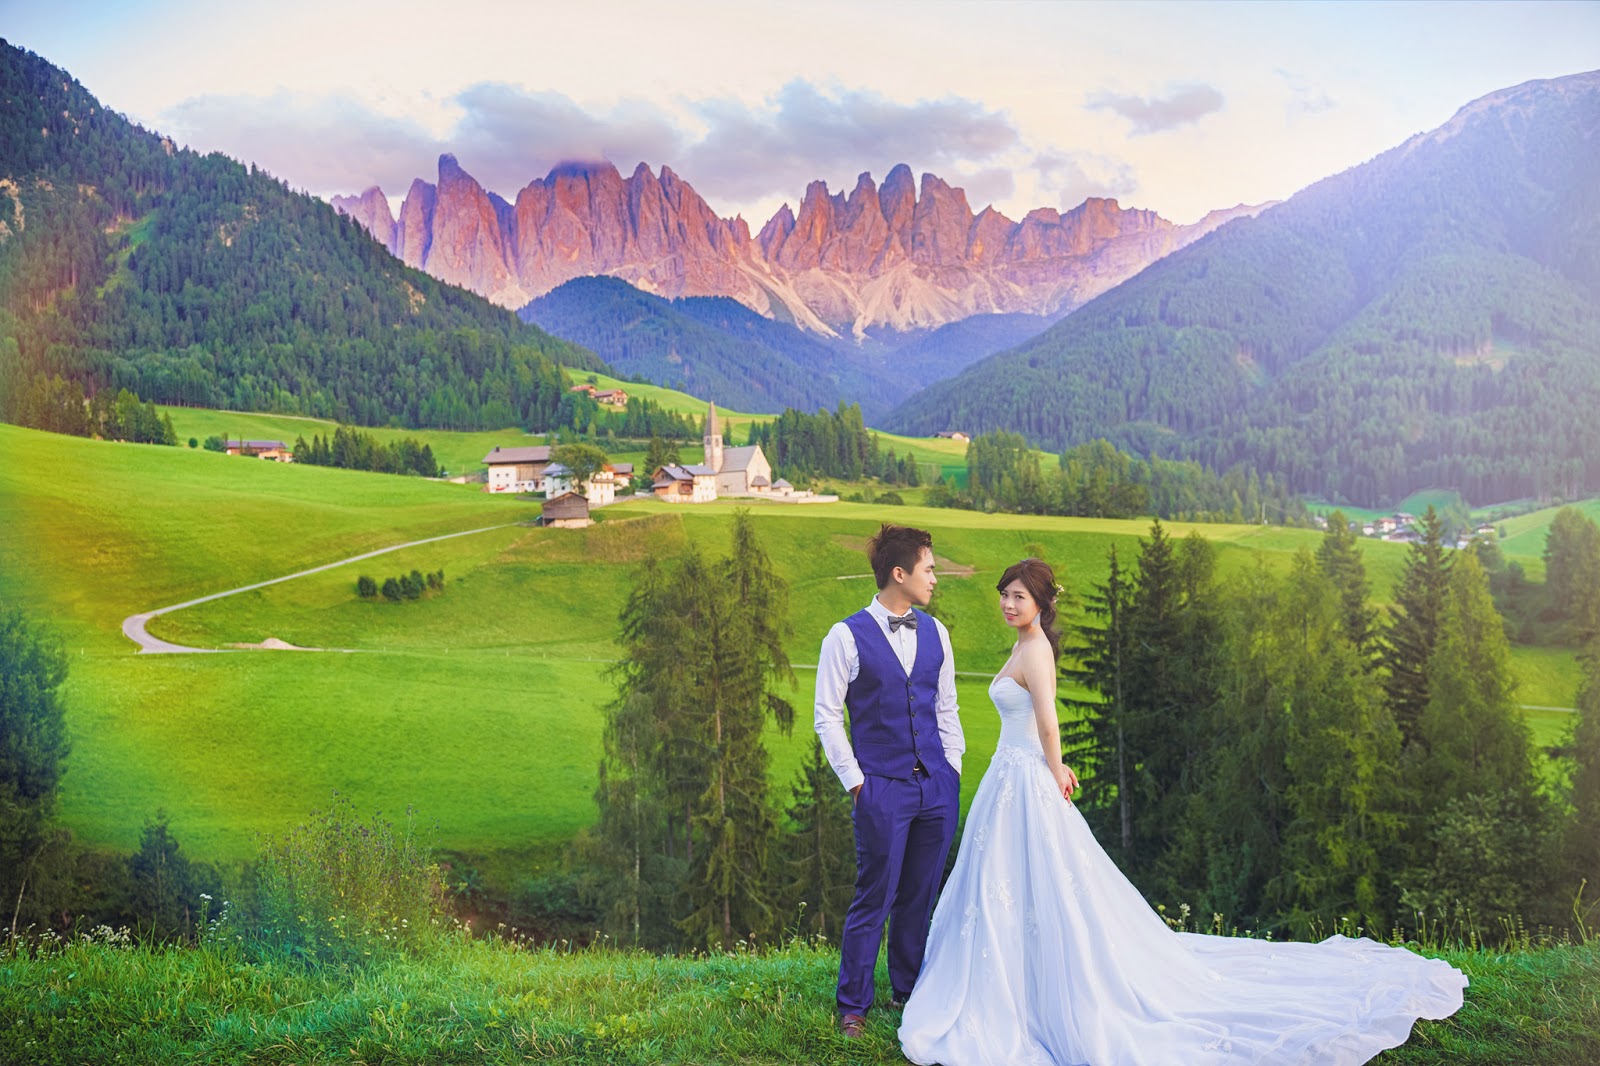 多洛米蒂婚紗 Dolomiti婚紗 富內斯 Val di Funes 仙境婚紗  義大利婚紗 Bolzano 波扎諾 威尼斯婚紗 米蘭羅馬